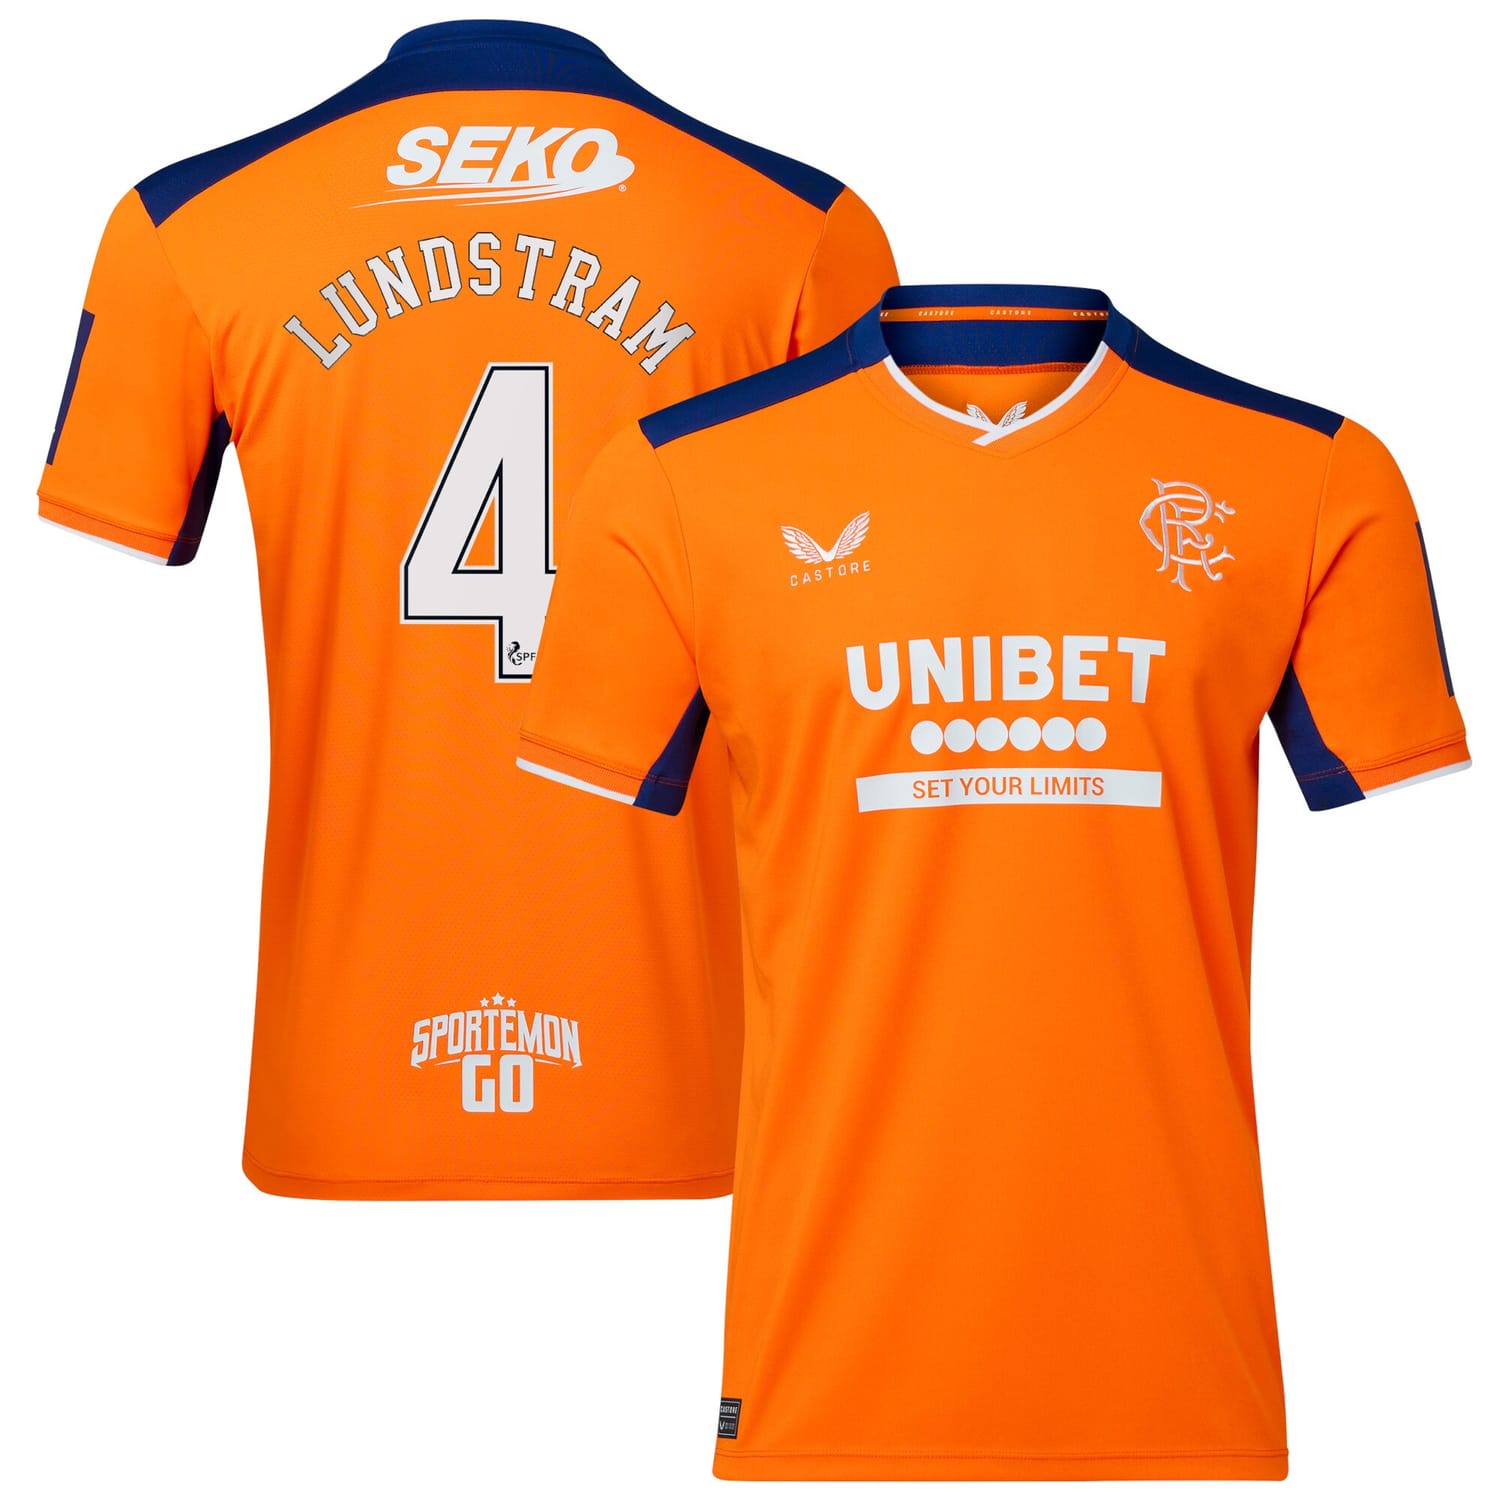 Scottish Premiership Rangers FC Third Jersey Shirt 2022-23 player John Lundstram 4 printing for Men